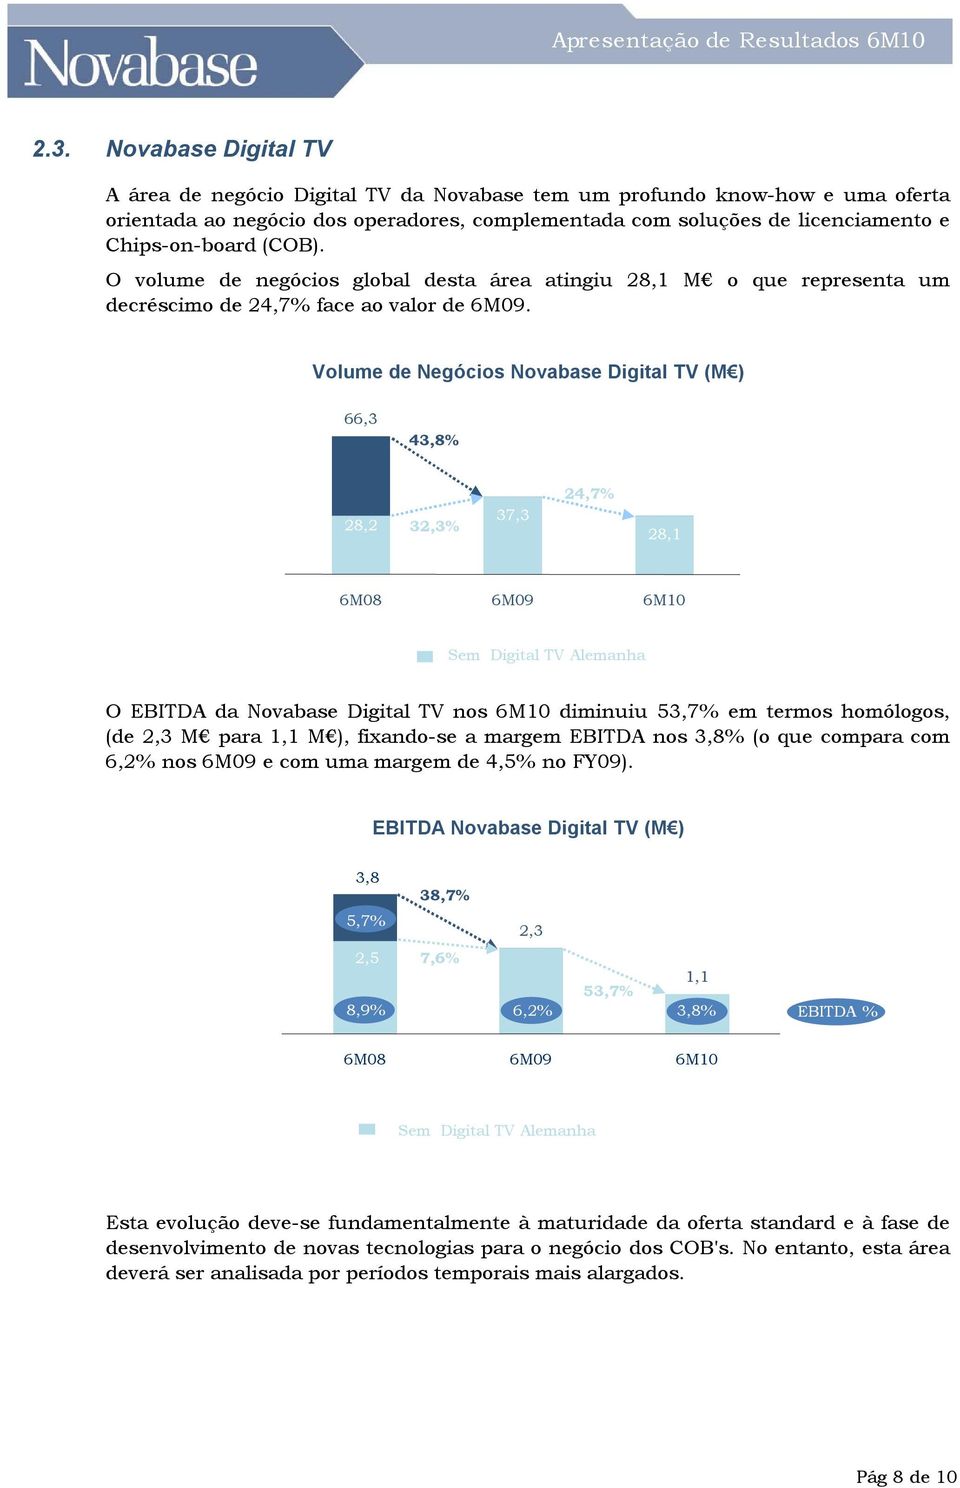 Volume de Negócios Novabase Digital TV (M ) 66,3 43,8% 28,2 32,3% 37,3 24,7% 28,1 Sem Digital TV Alemanha O EBITDA da Novabase Digital TV nos 6M10 diminuiu 53,7% em termos homólogos, (de 2,3 M para